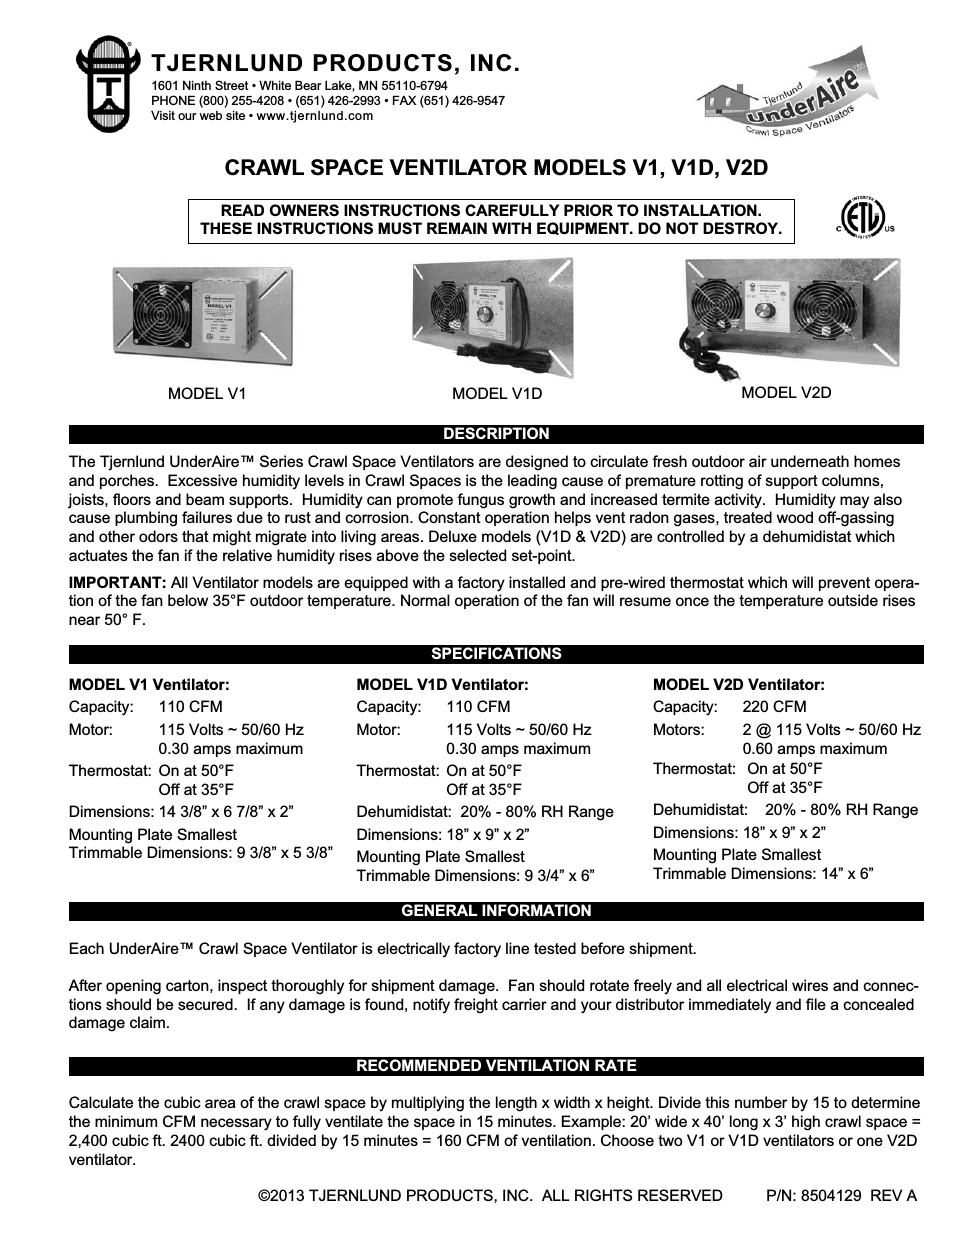 V1 Crawl Space Ventilators 8504129 Rev A